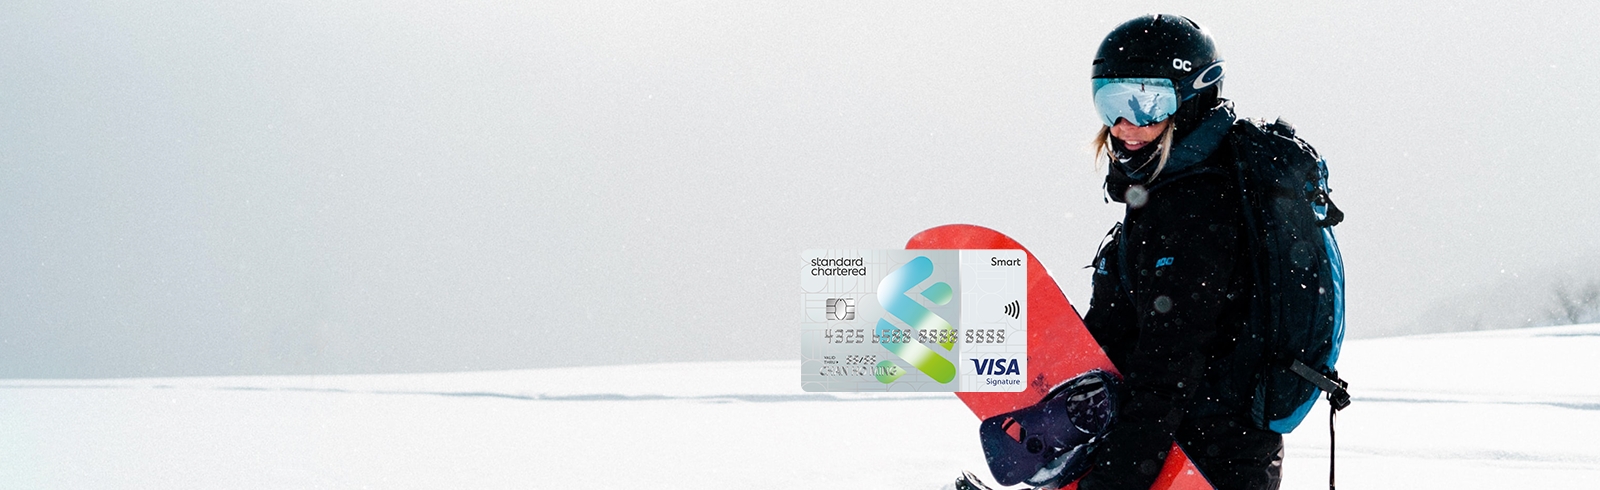 男士一個人在滑雪及渣打Smart卡的卡面, 用於推廣渣打Smart卡